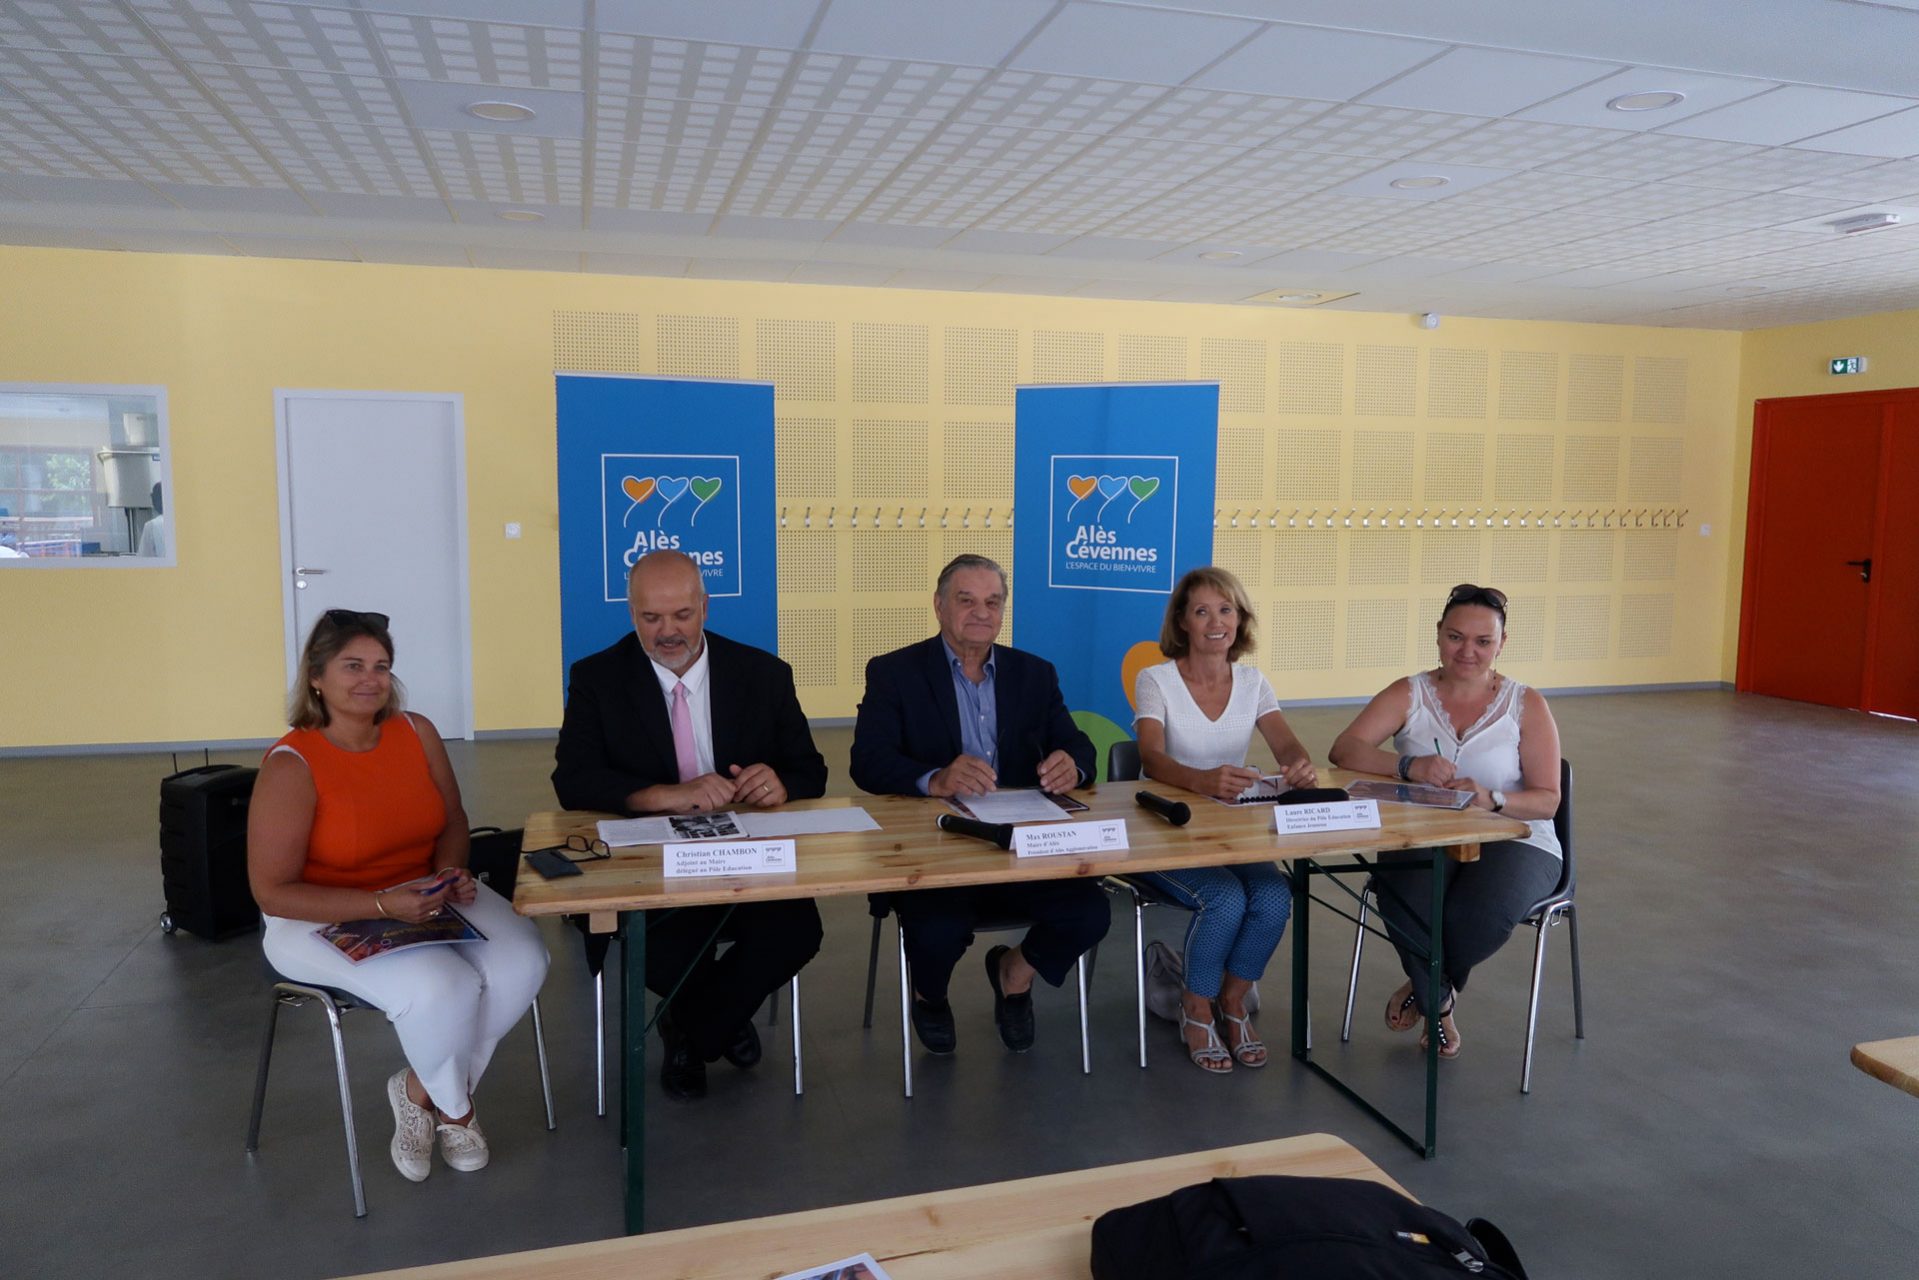 Jeudi 30 août, Max Roustan, maire d'Alès, et ses équipes municipales, ont symboliquement tenu la conférence de presse de la rentrée dans le nouveau restaurant scolaire de l'école Claire-Lacombe.